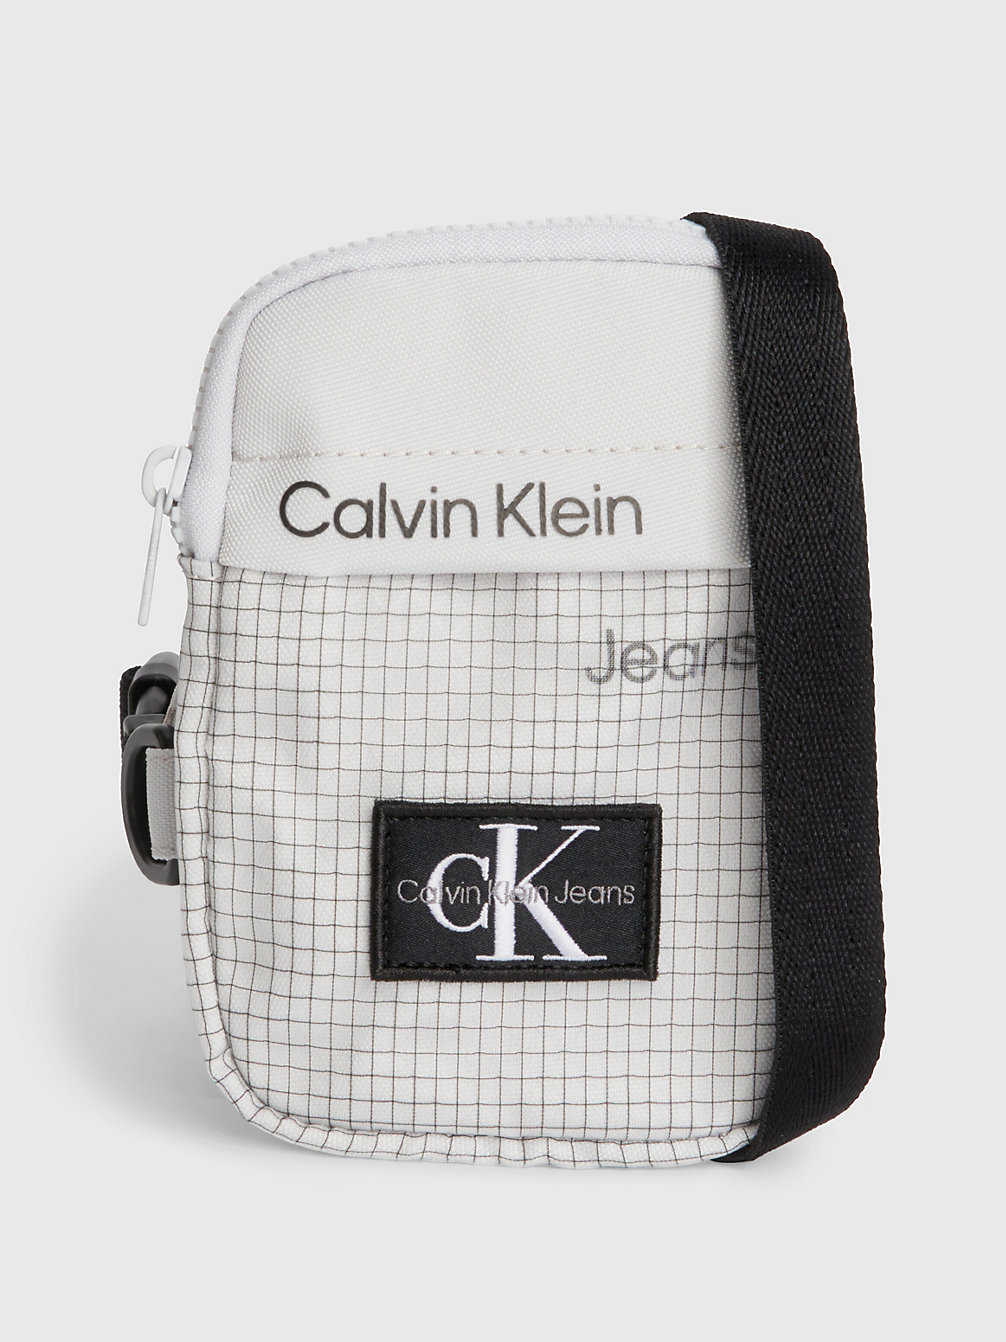 GHOST GREY Crossover-Bag Für Kids Mit Logo undefined kids unisex Calvin Klein